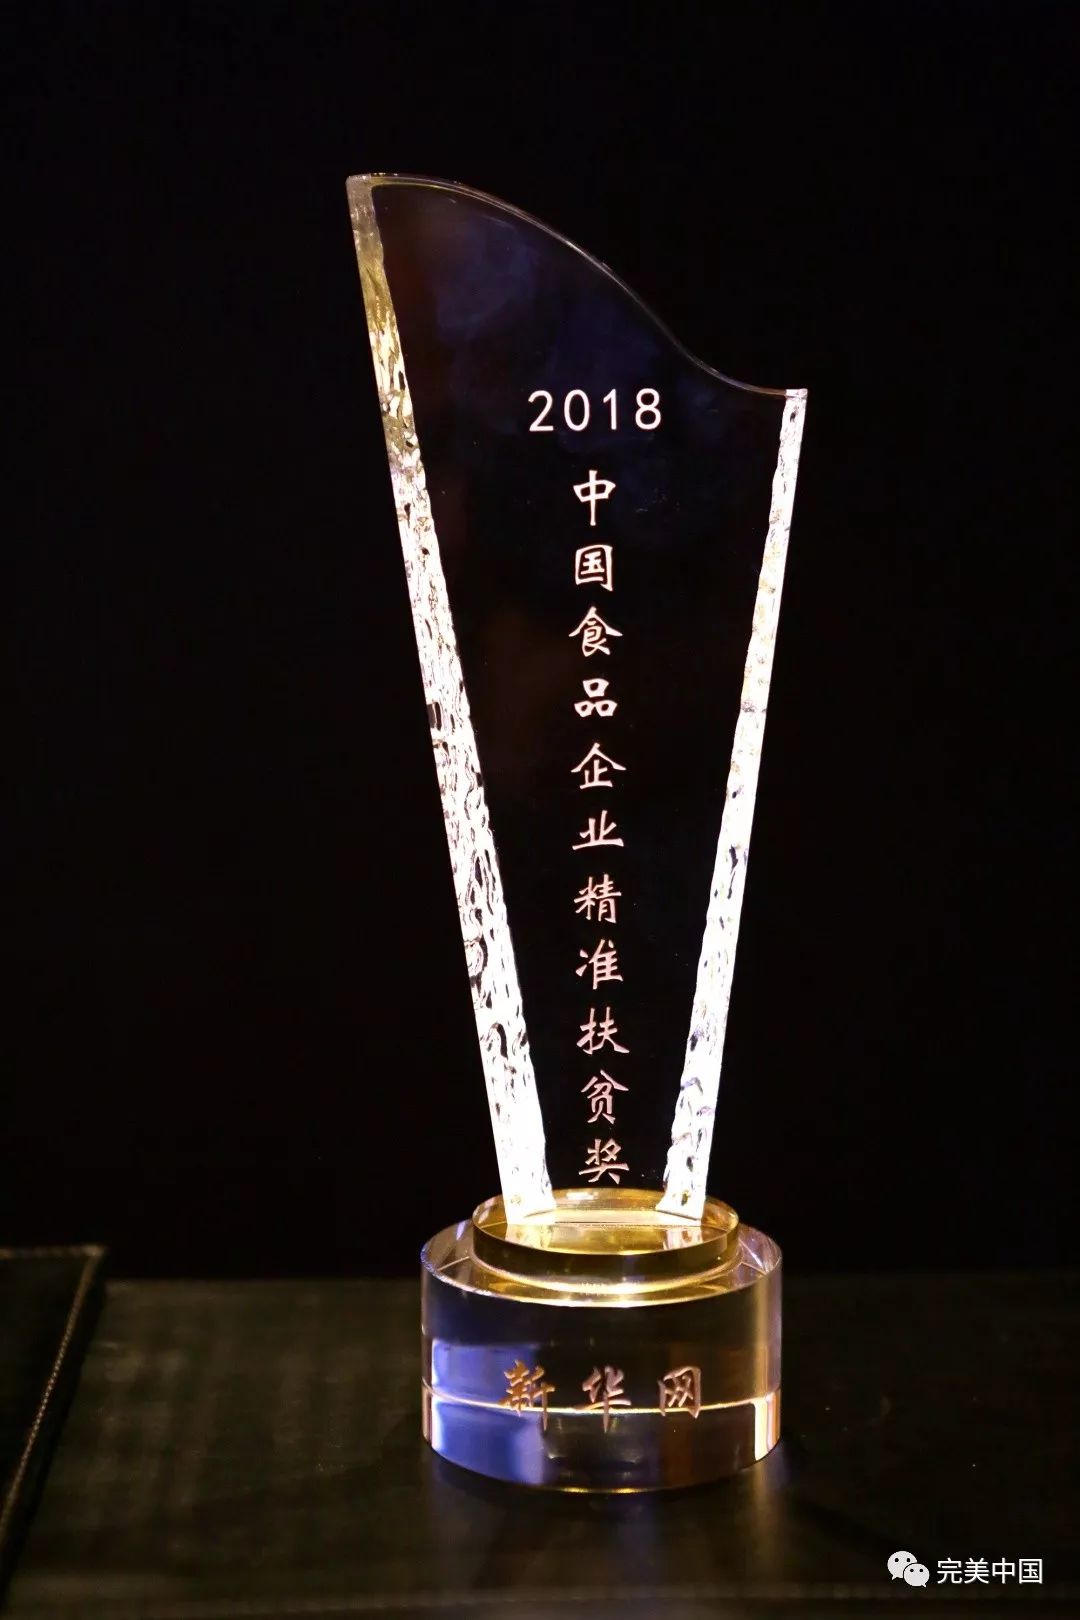 完美公司斩获2018年度“金箸奖”“精准扶贫奖”